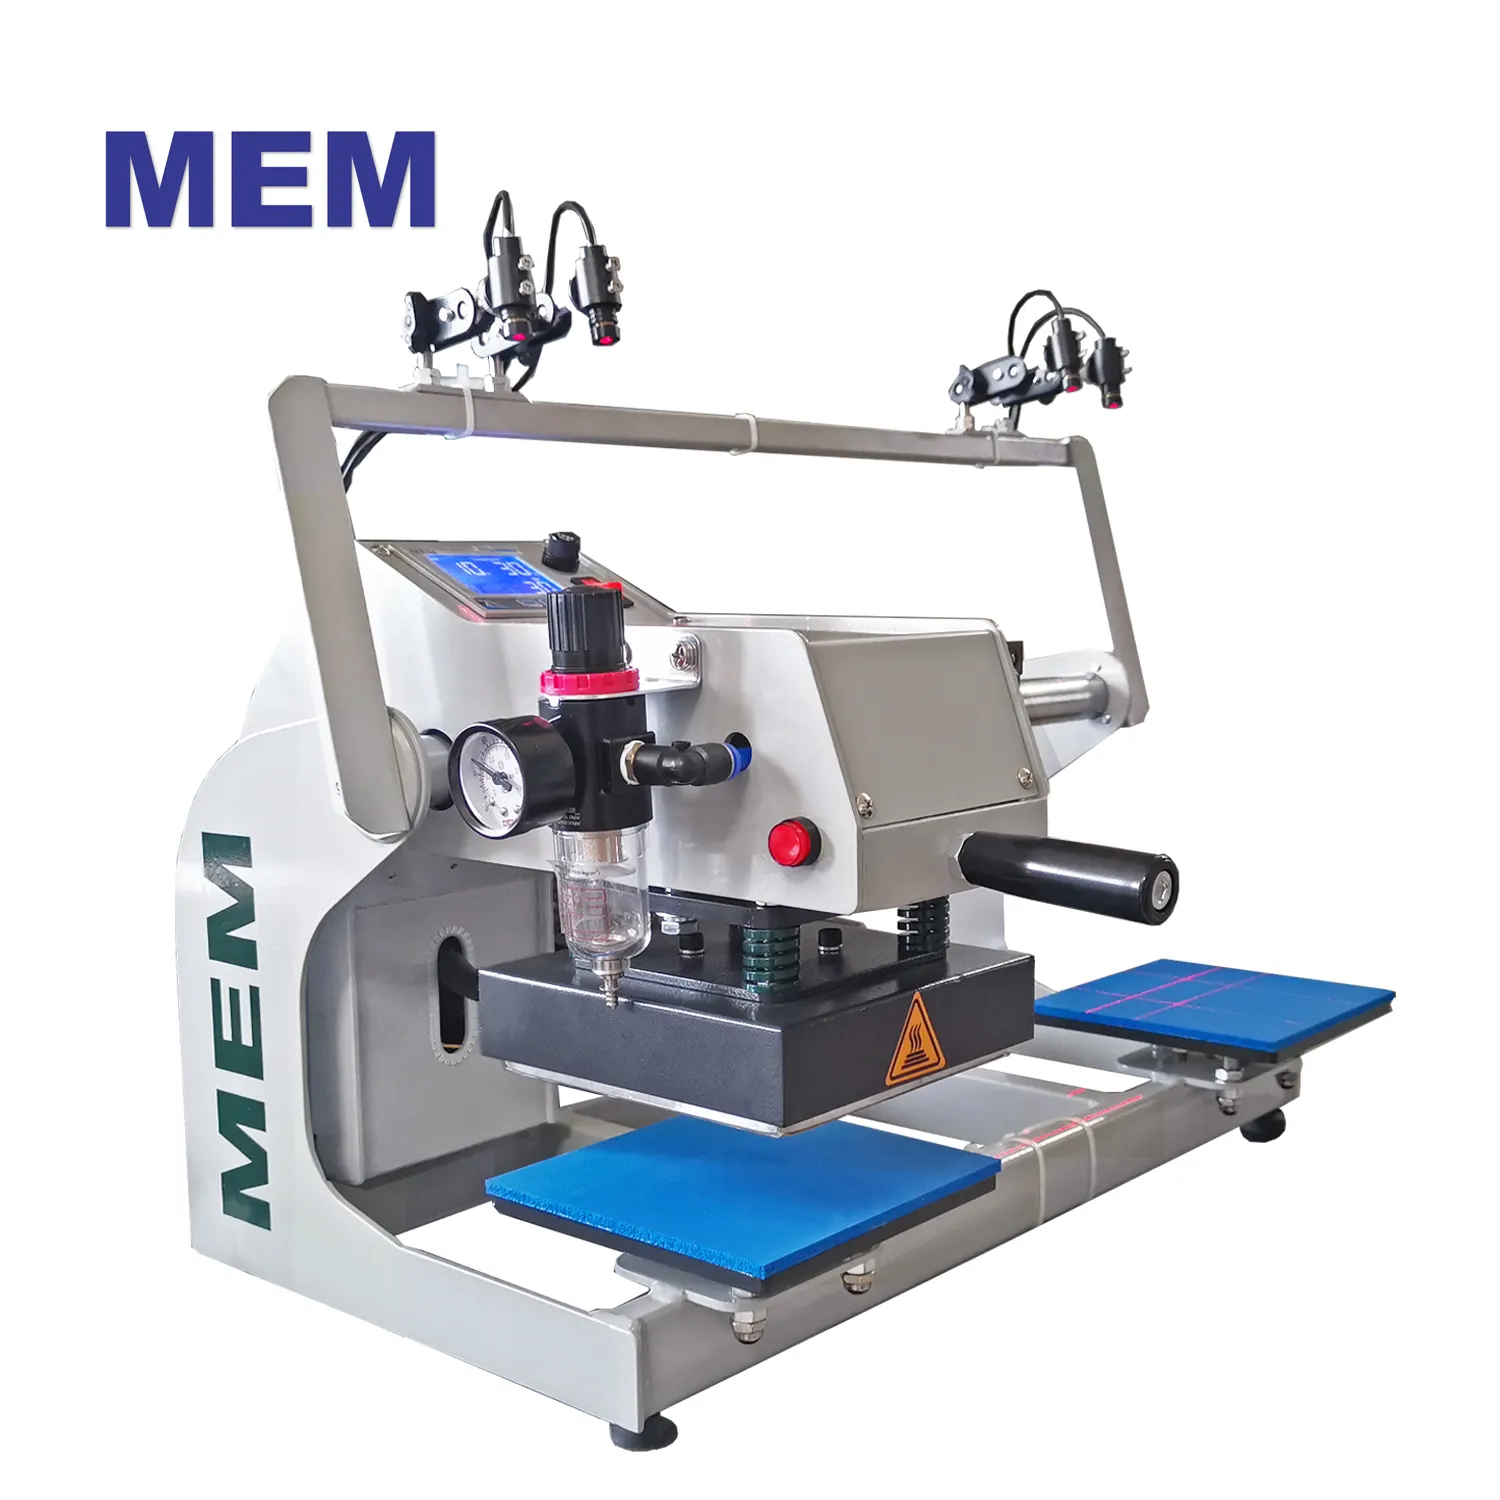 TQ 1515 MEM Dual Heat Press 15 cm pneumatisch mit Lasern zum Heiß pressen von Etiketten